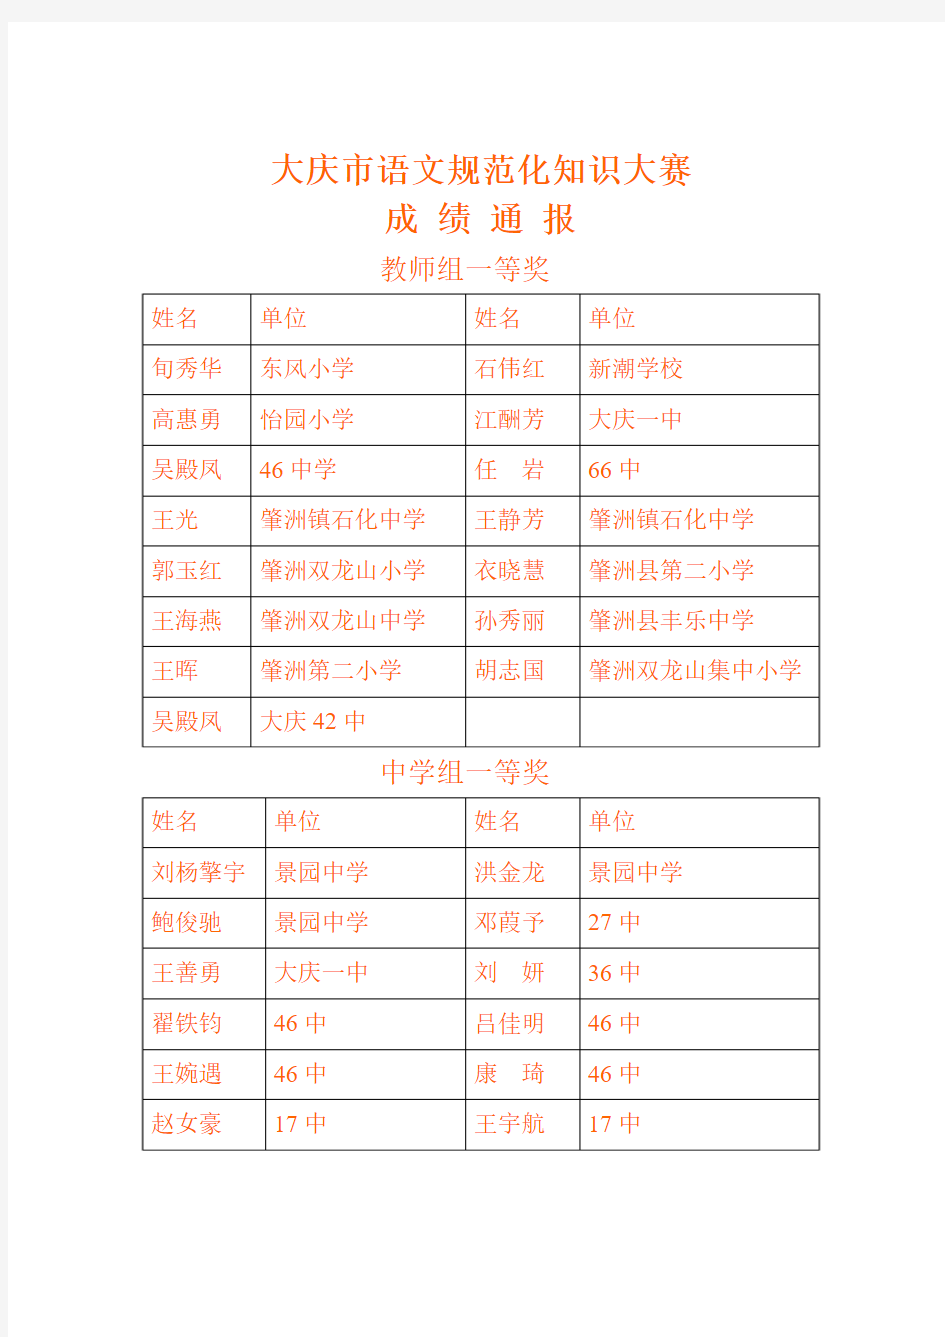 大庆市语文规范化知识大赛